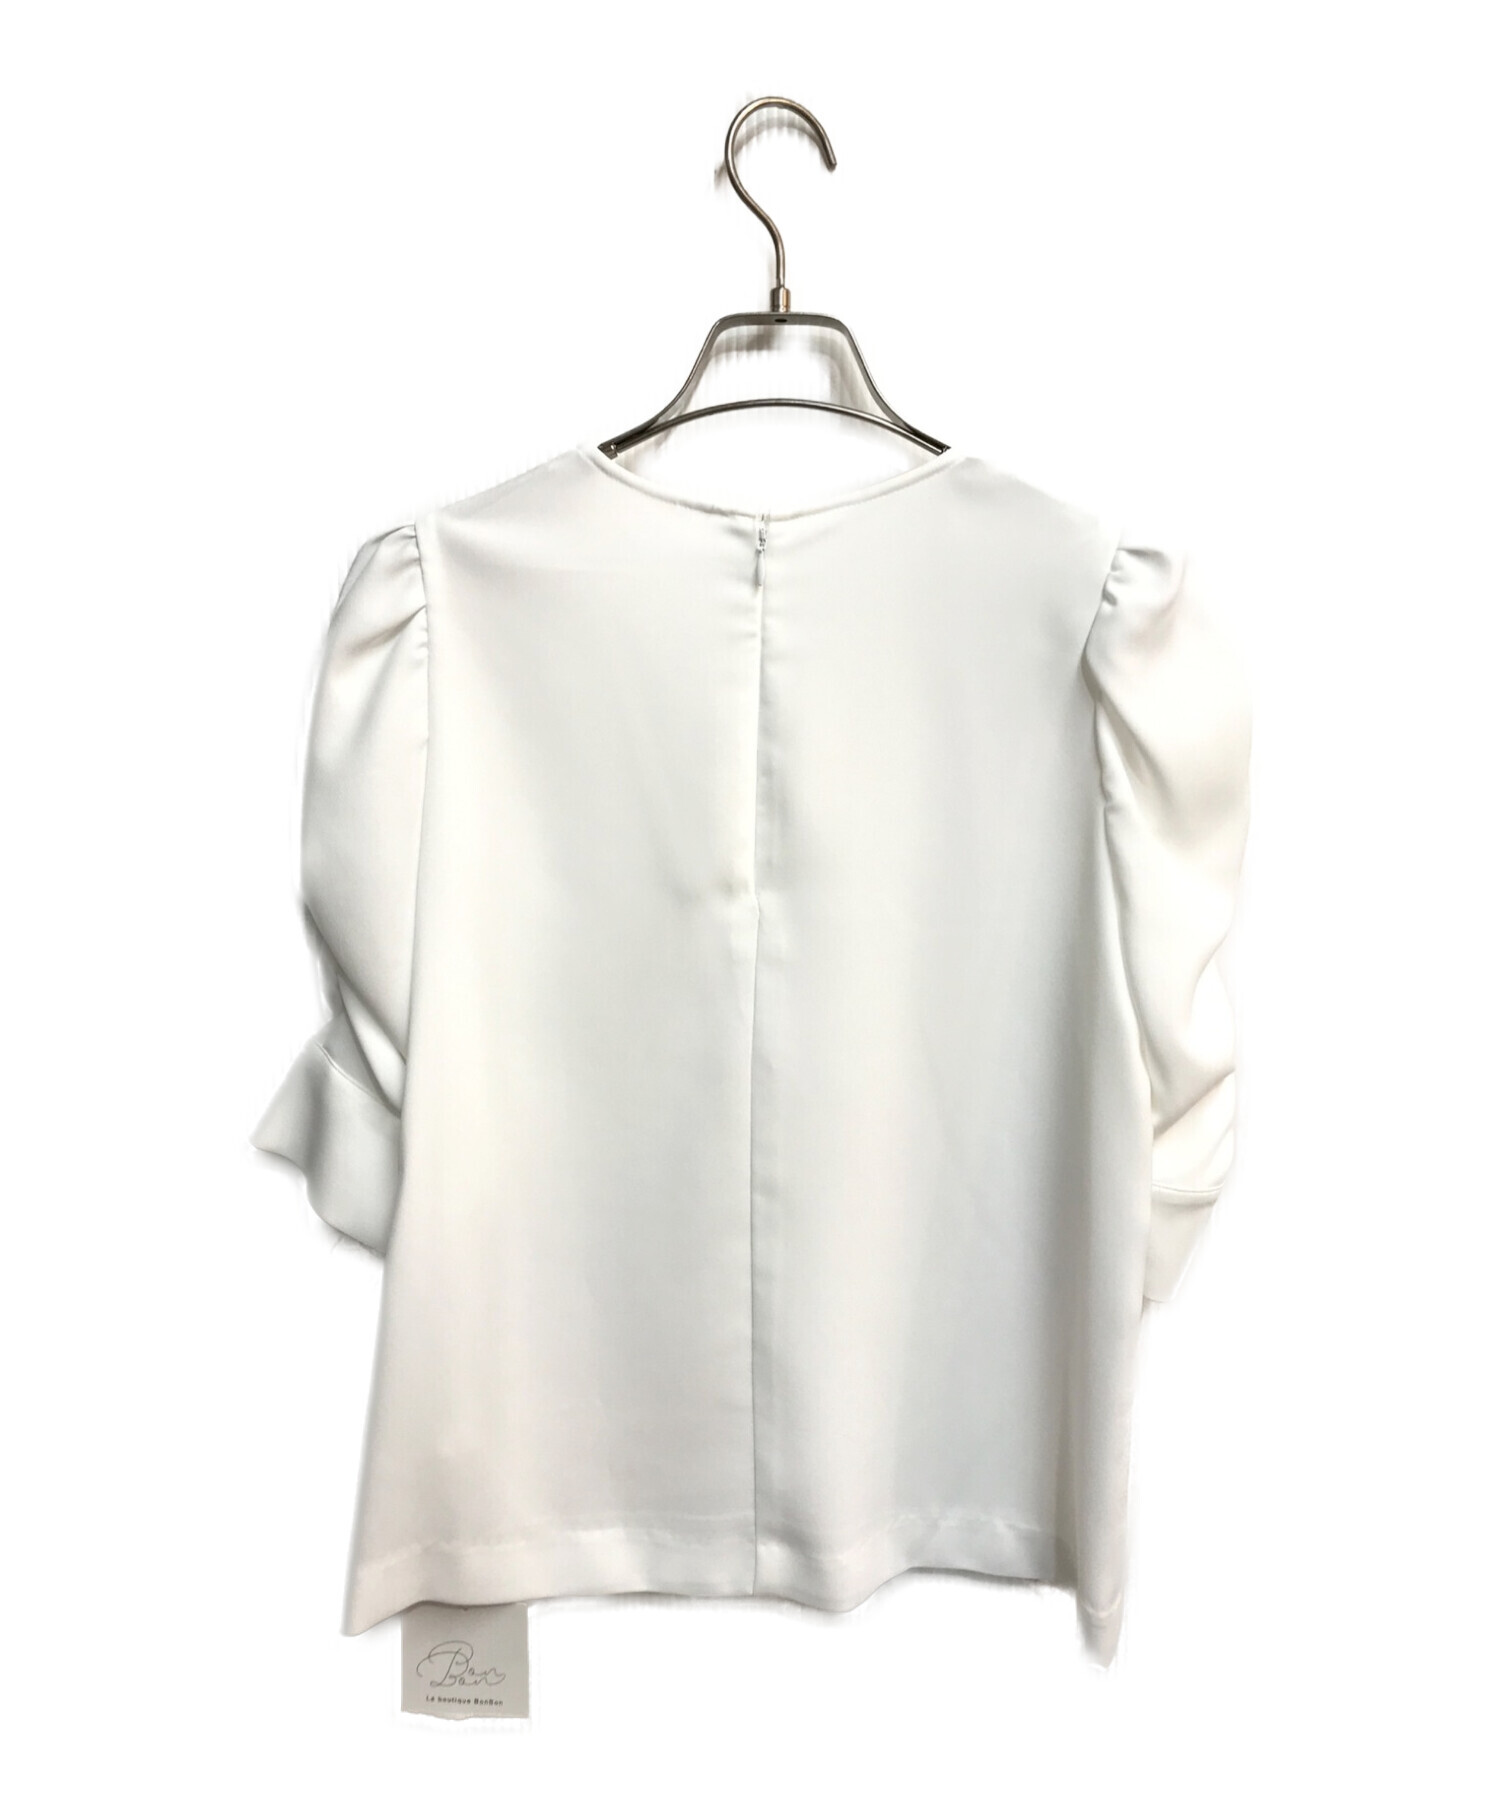 リコRIKO新品ボンボンブラウス白Bonbon blouse31900円-